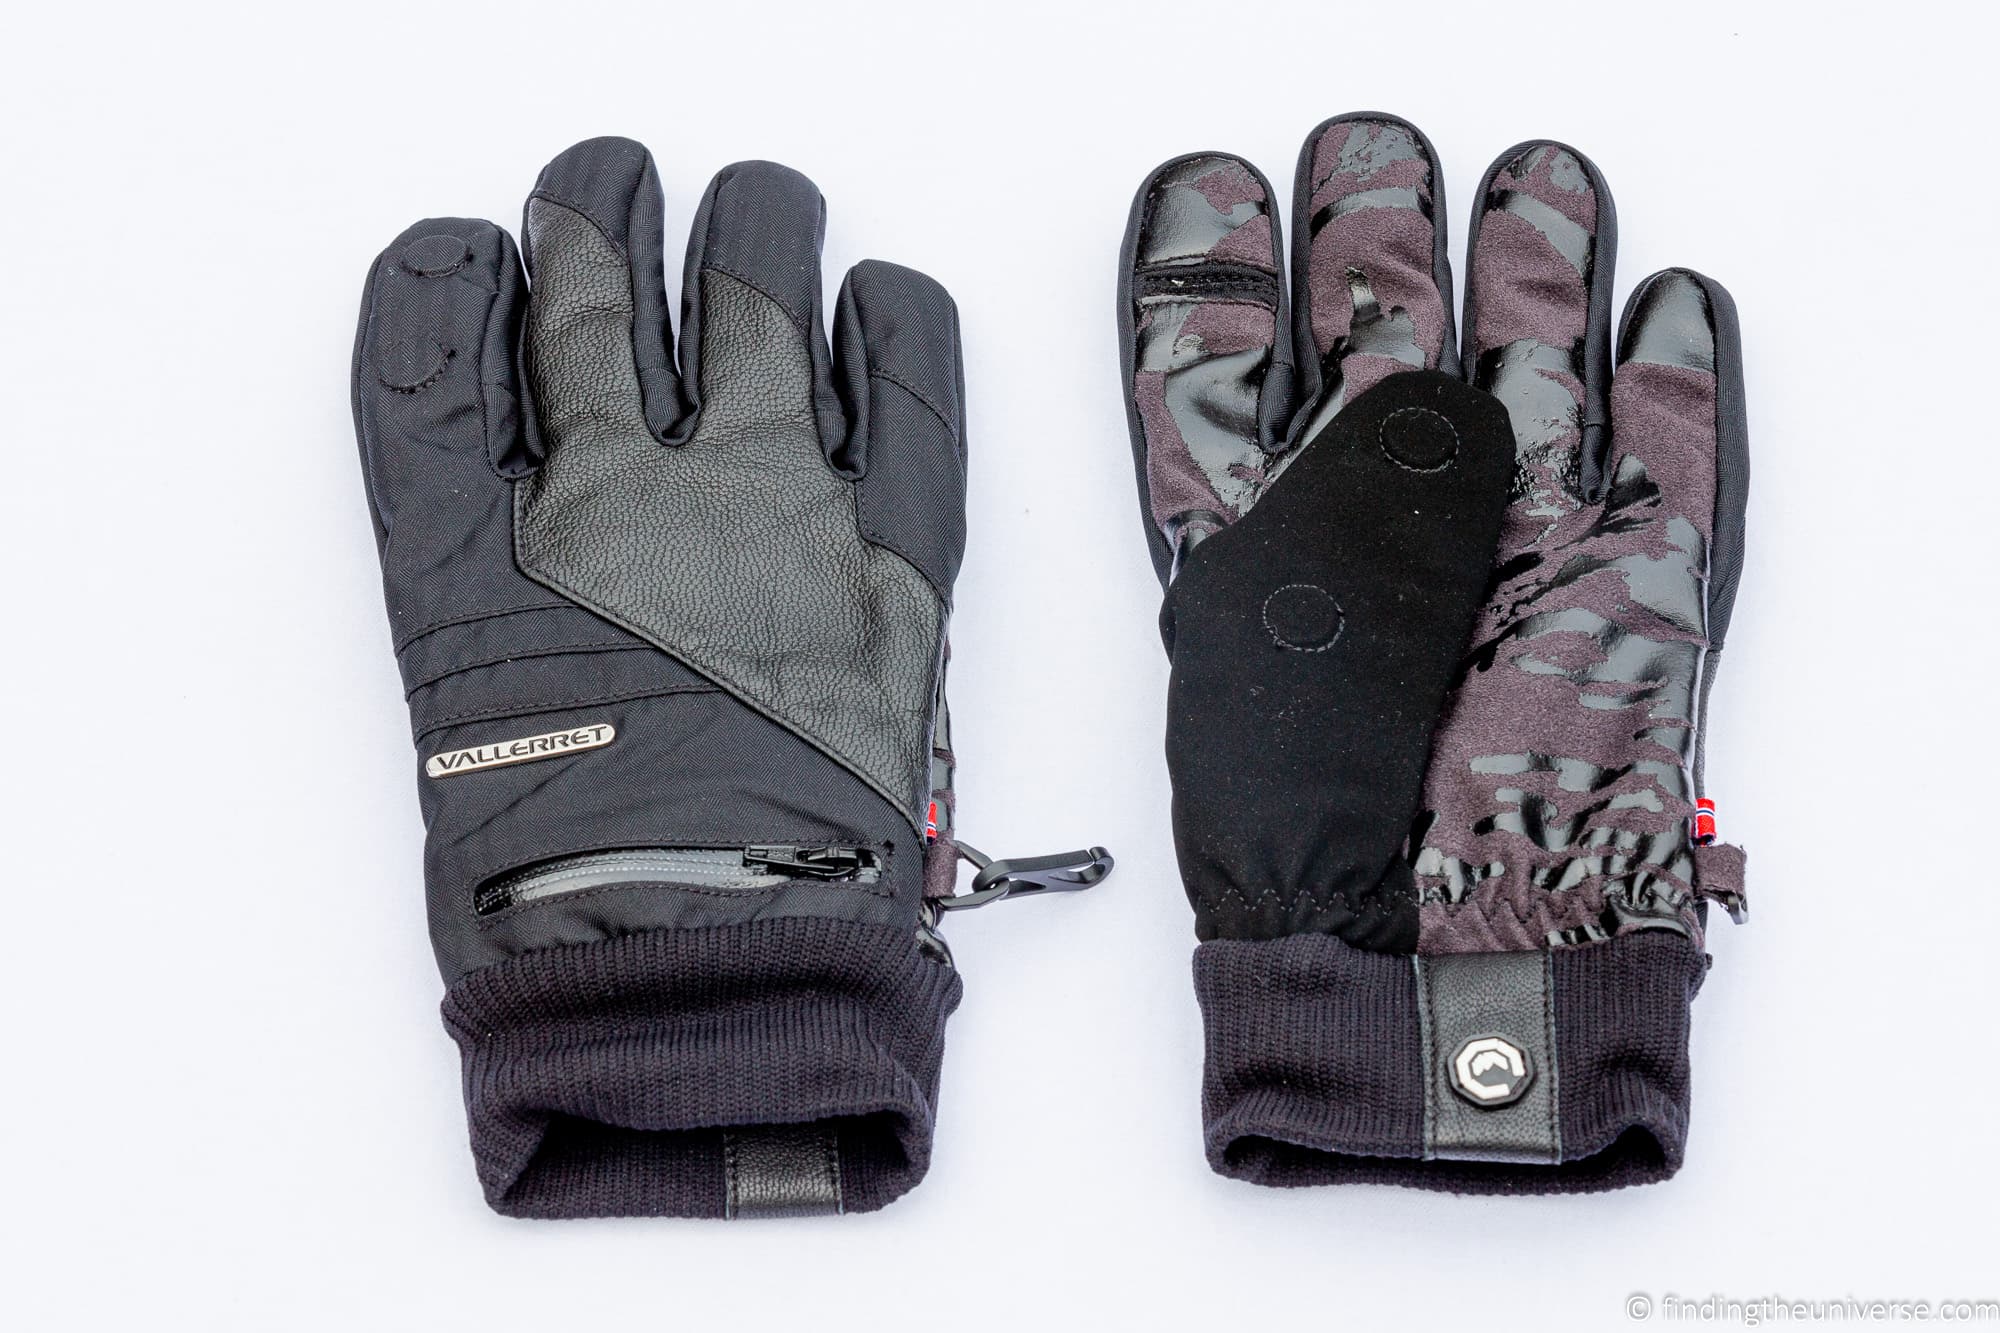 Vallerret Photography Gloves